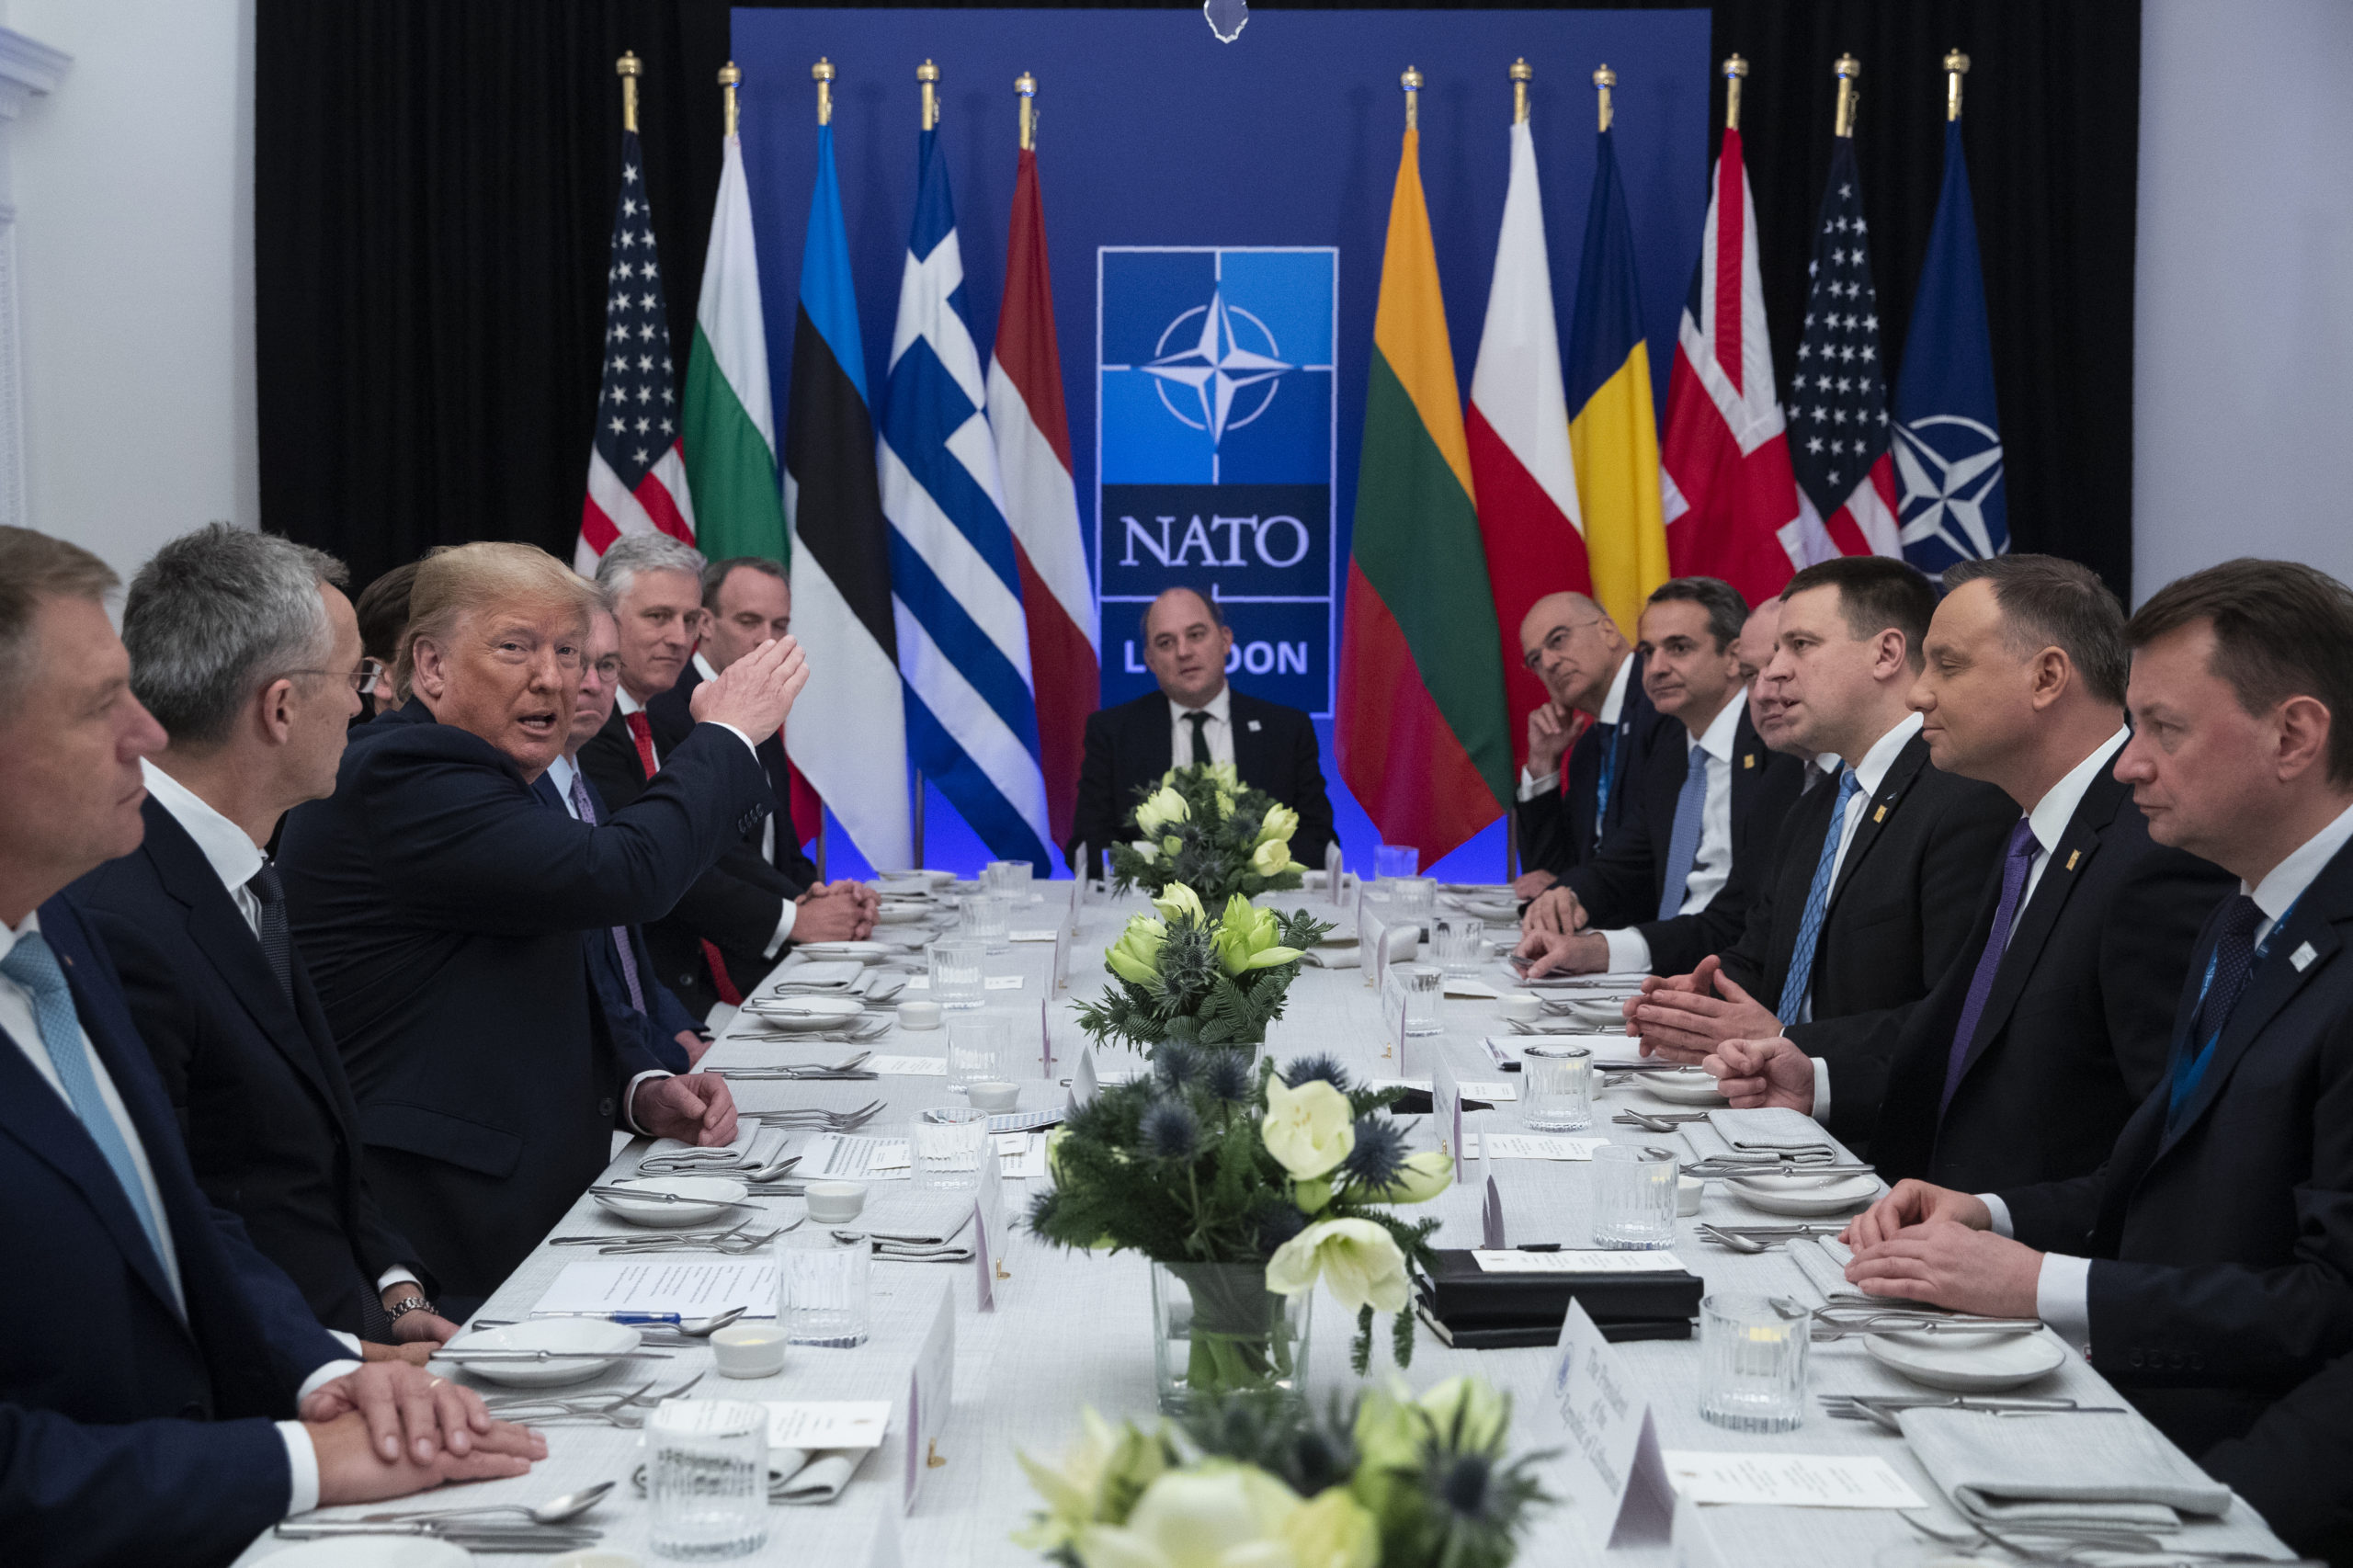 300000 нато. Североатлантический Альянс НАТО. NATO (North Atlantic Treaty Organization) - Североатлантический военный Альянс (НАТО).. Саммит НАТО 1999. Саммит Альянса НАТО.